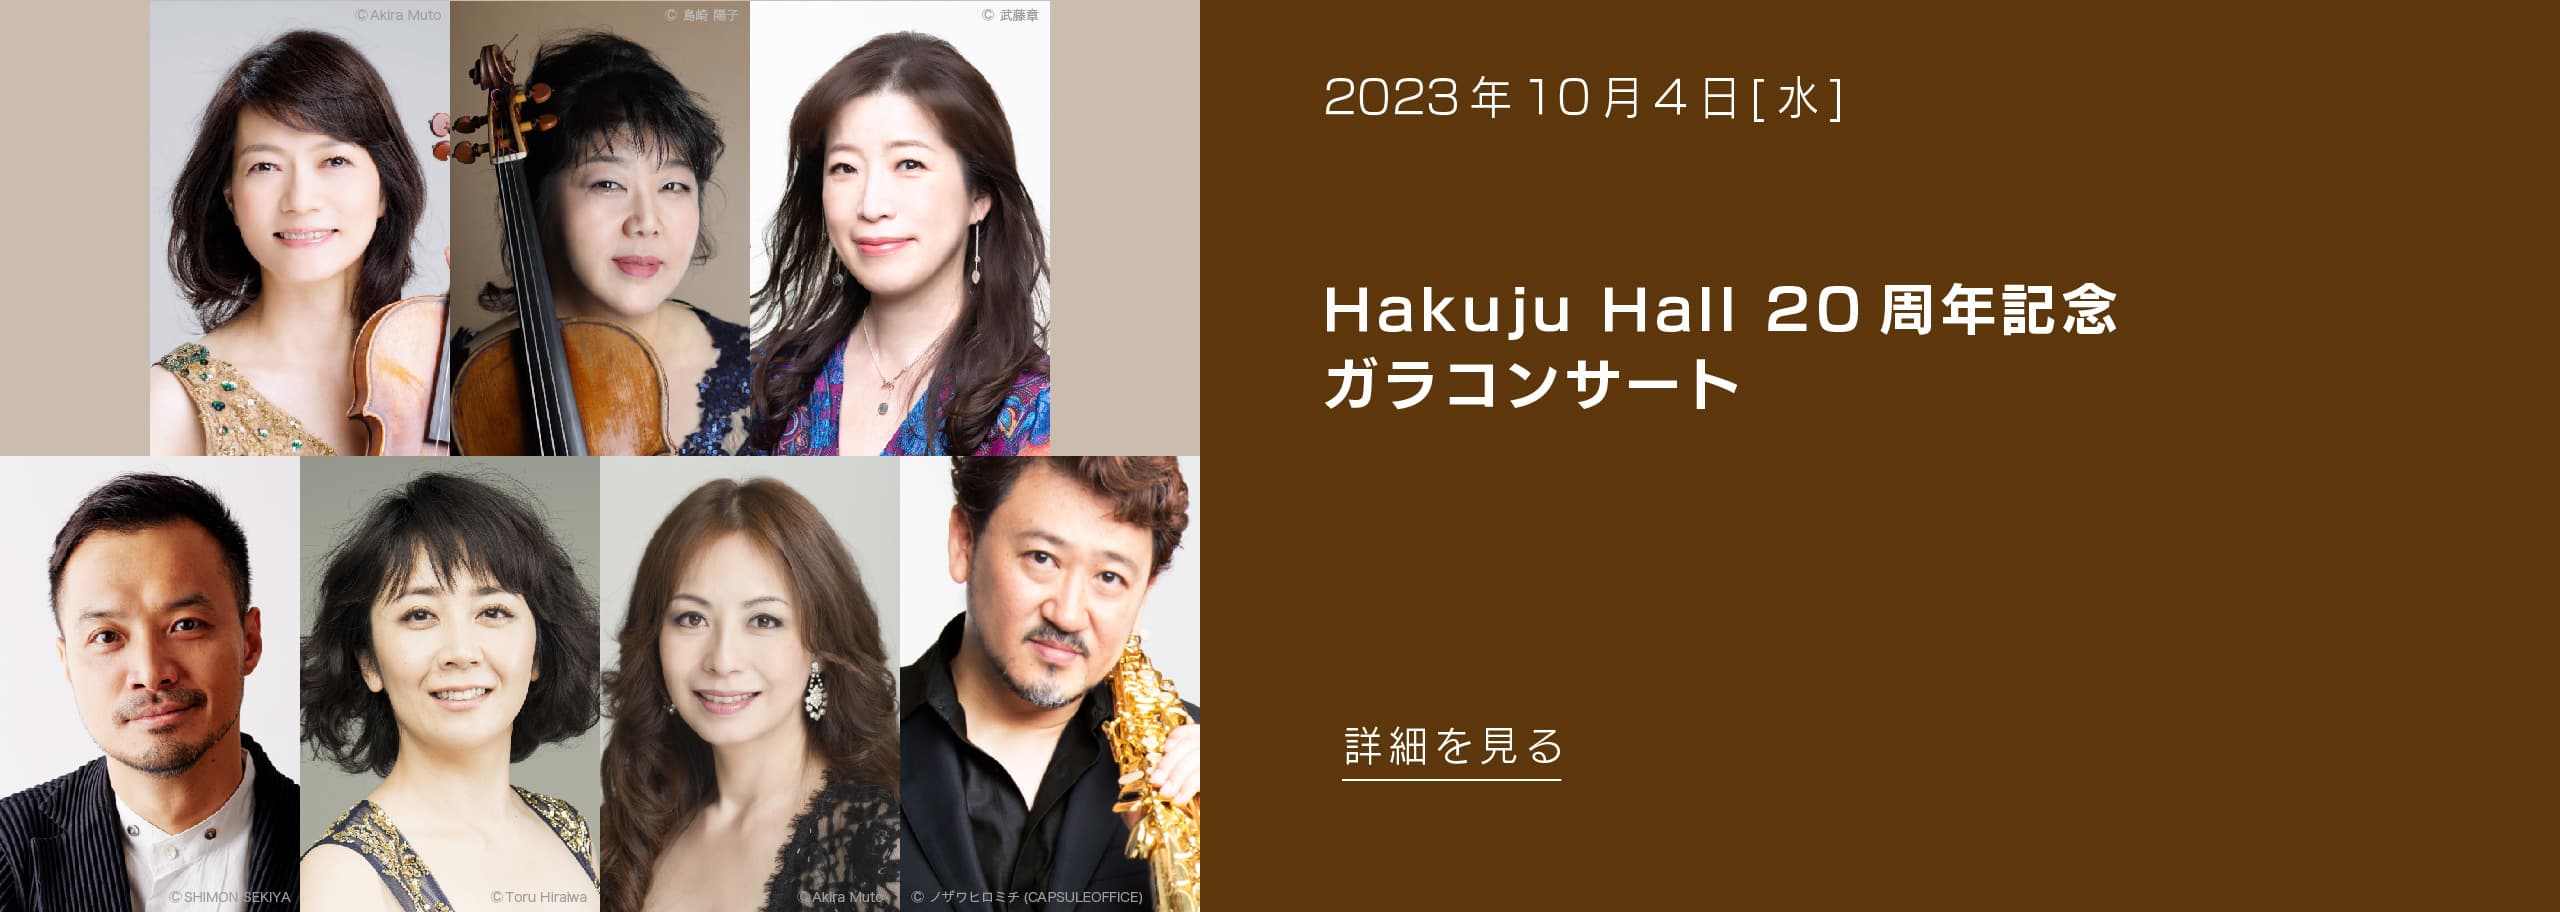 2023年10月4日(水) Hakuju Hall 20周年記念ガラコンサート